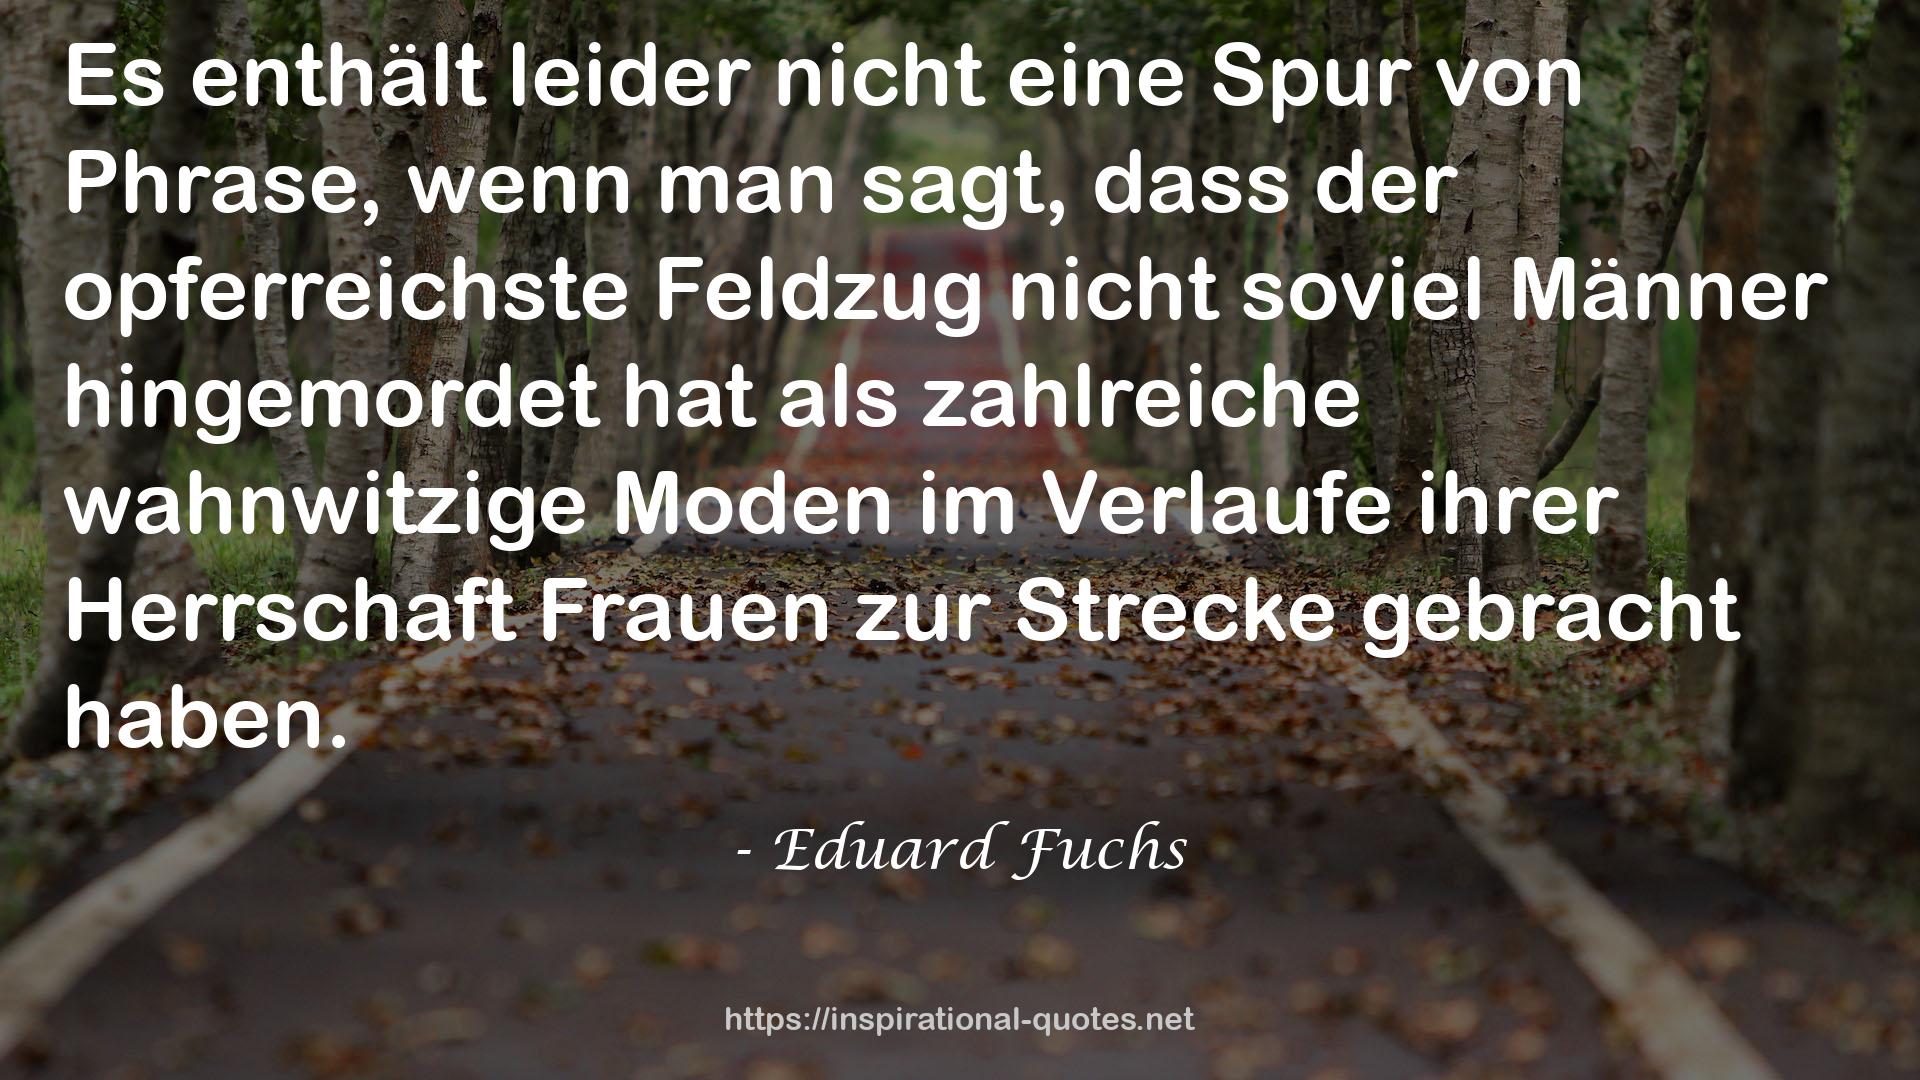 Eduard Fuchs QUOTES